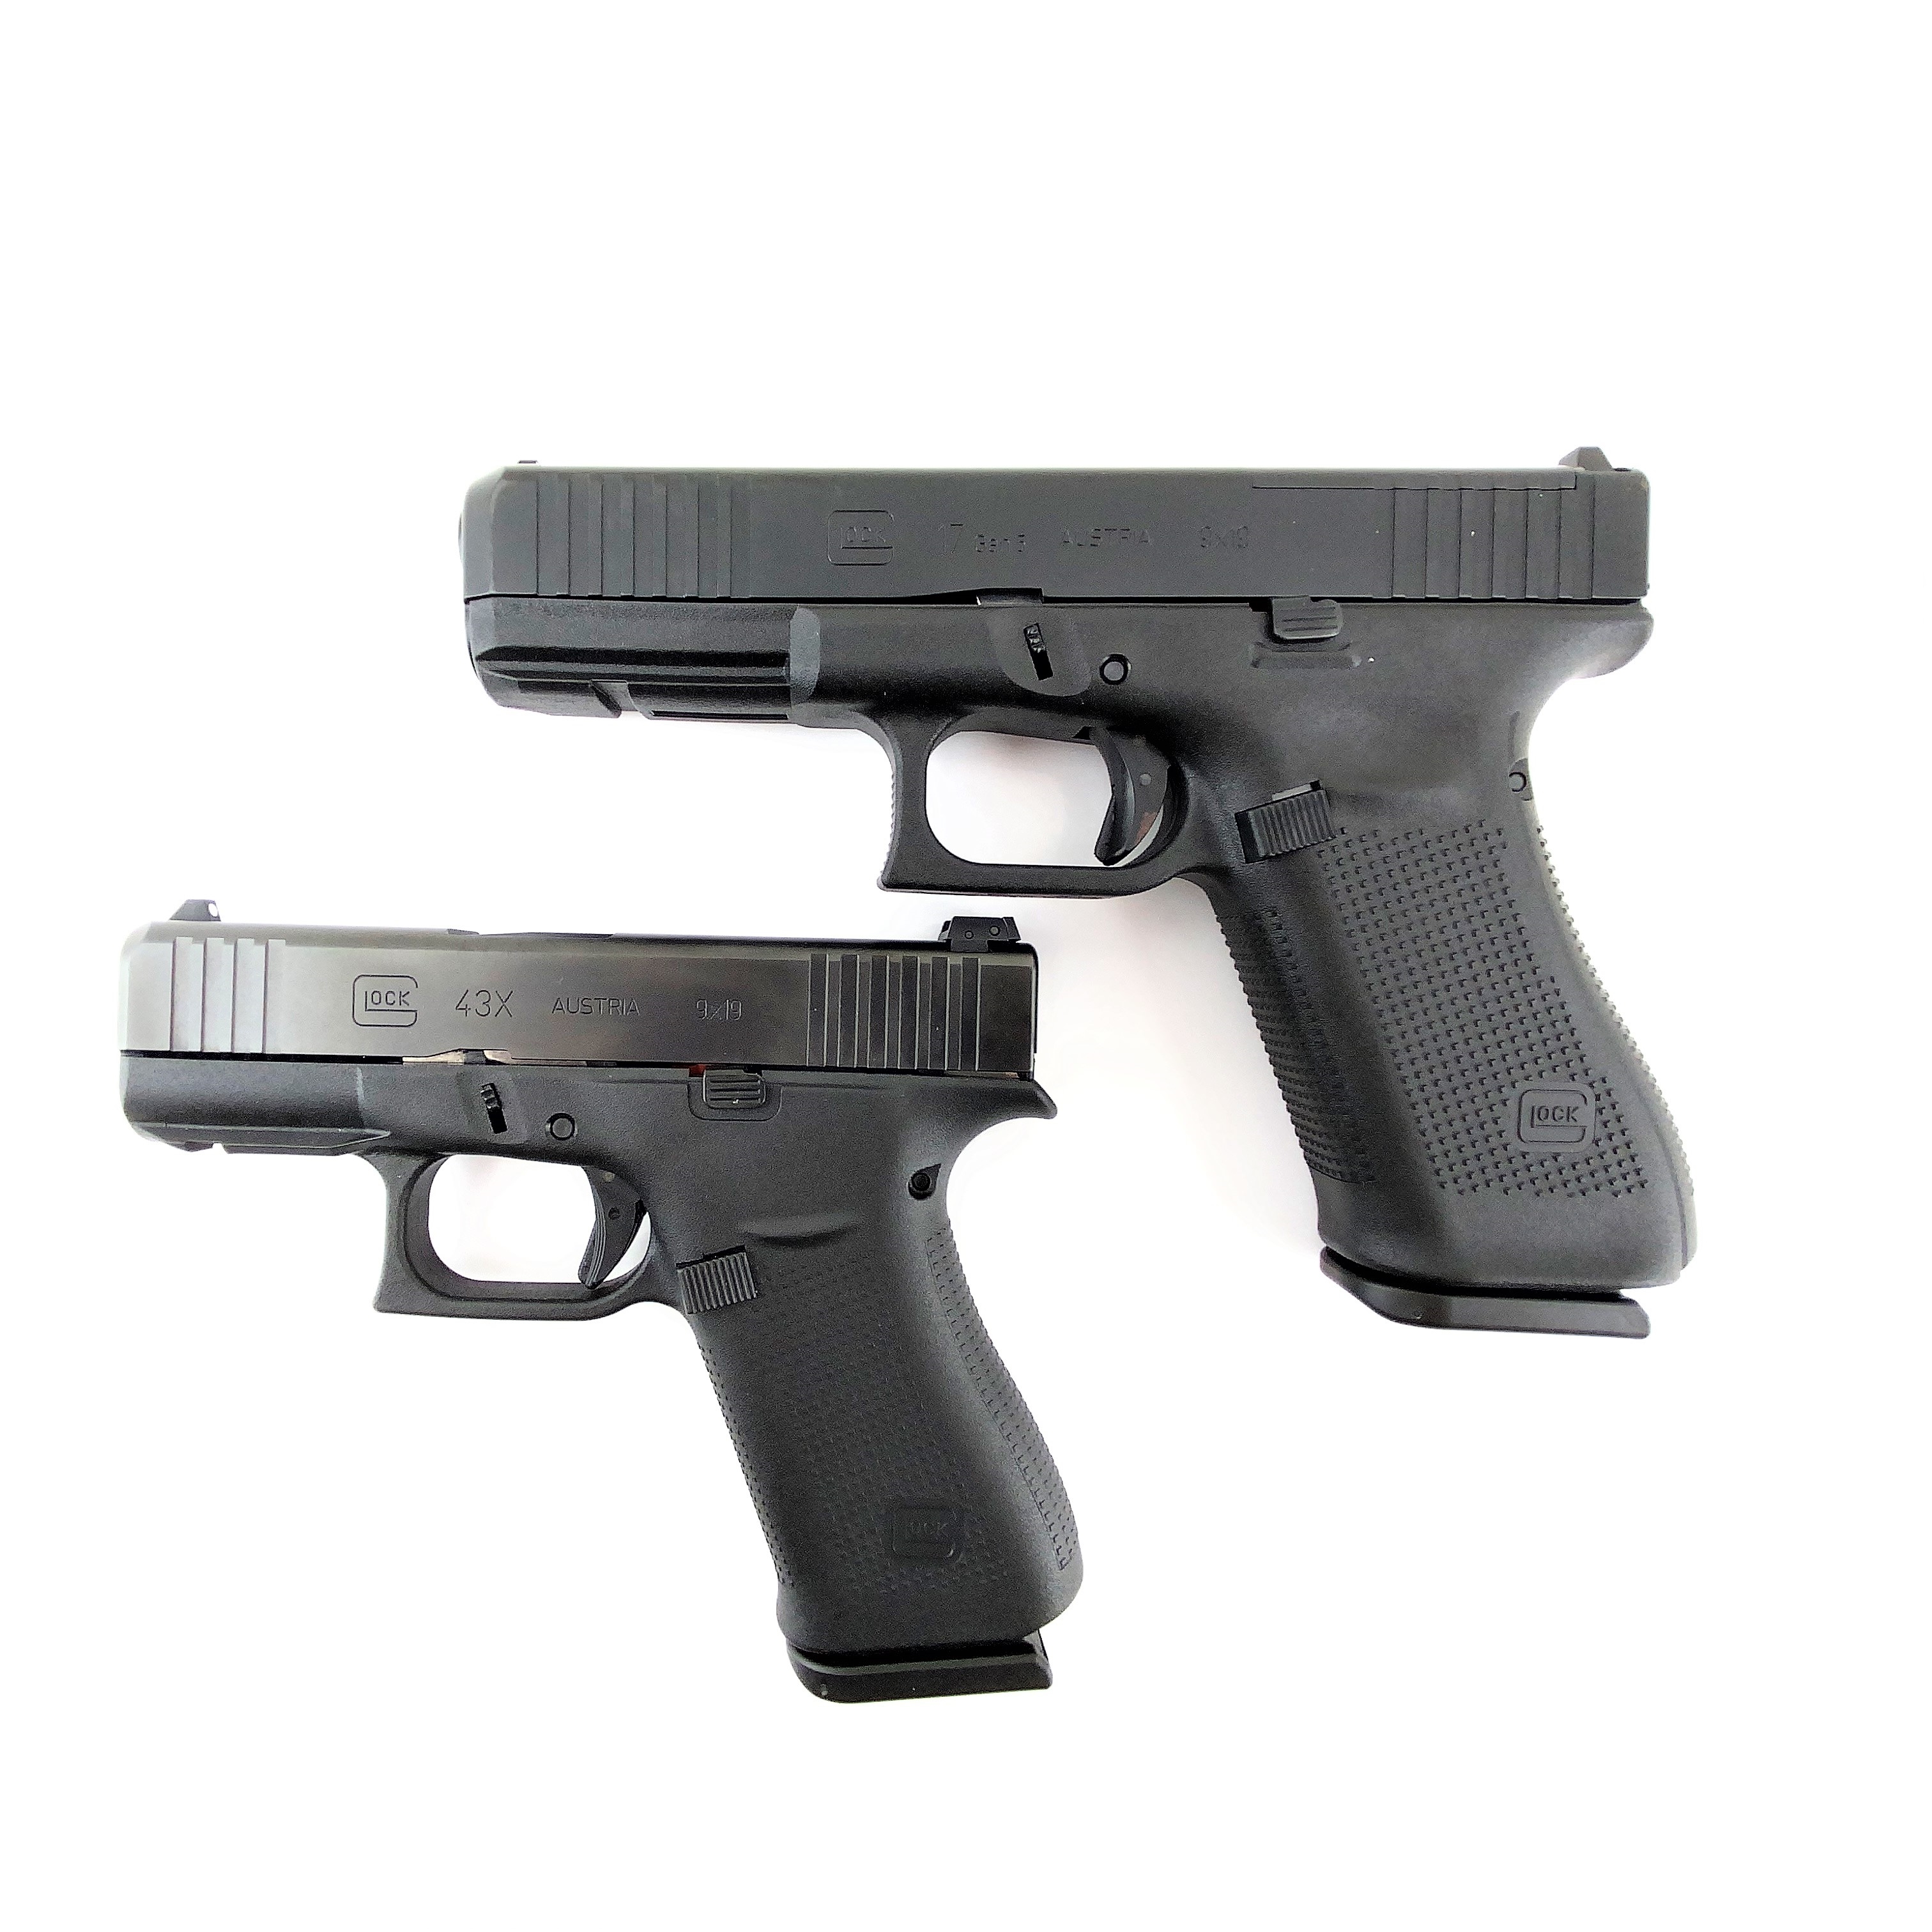 Größenvergleich Glock 17 gen5 und Glock 43X